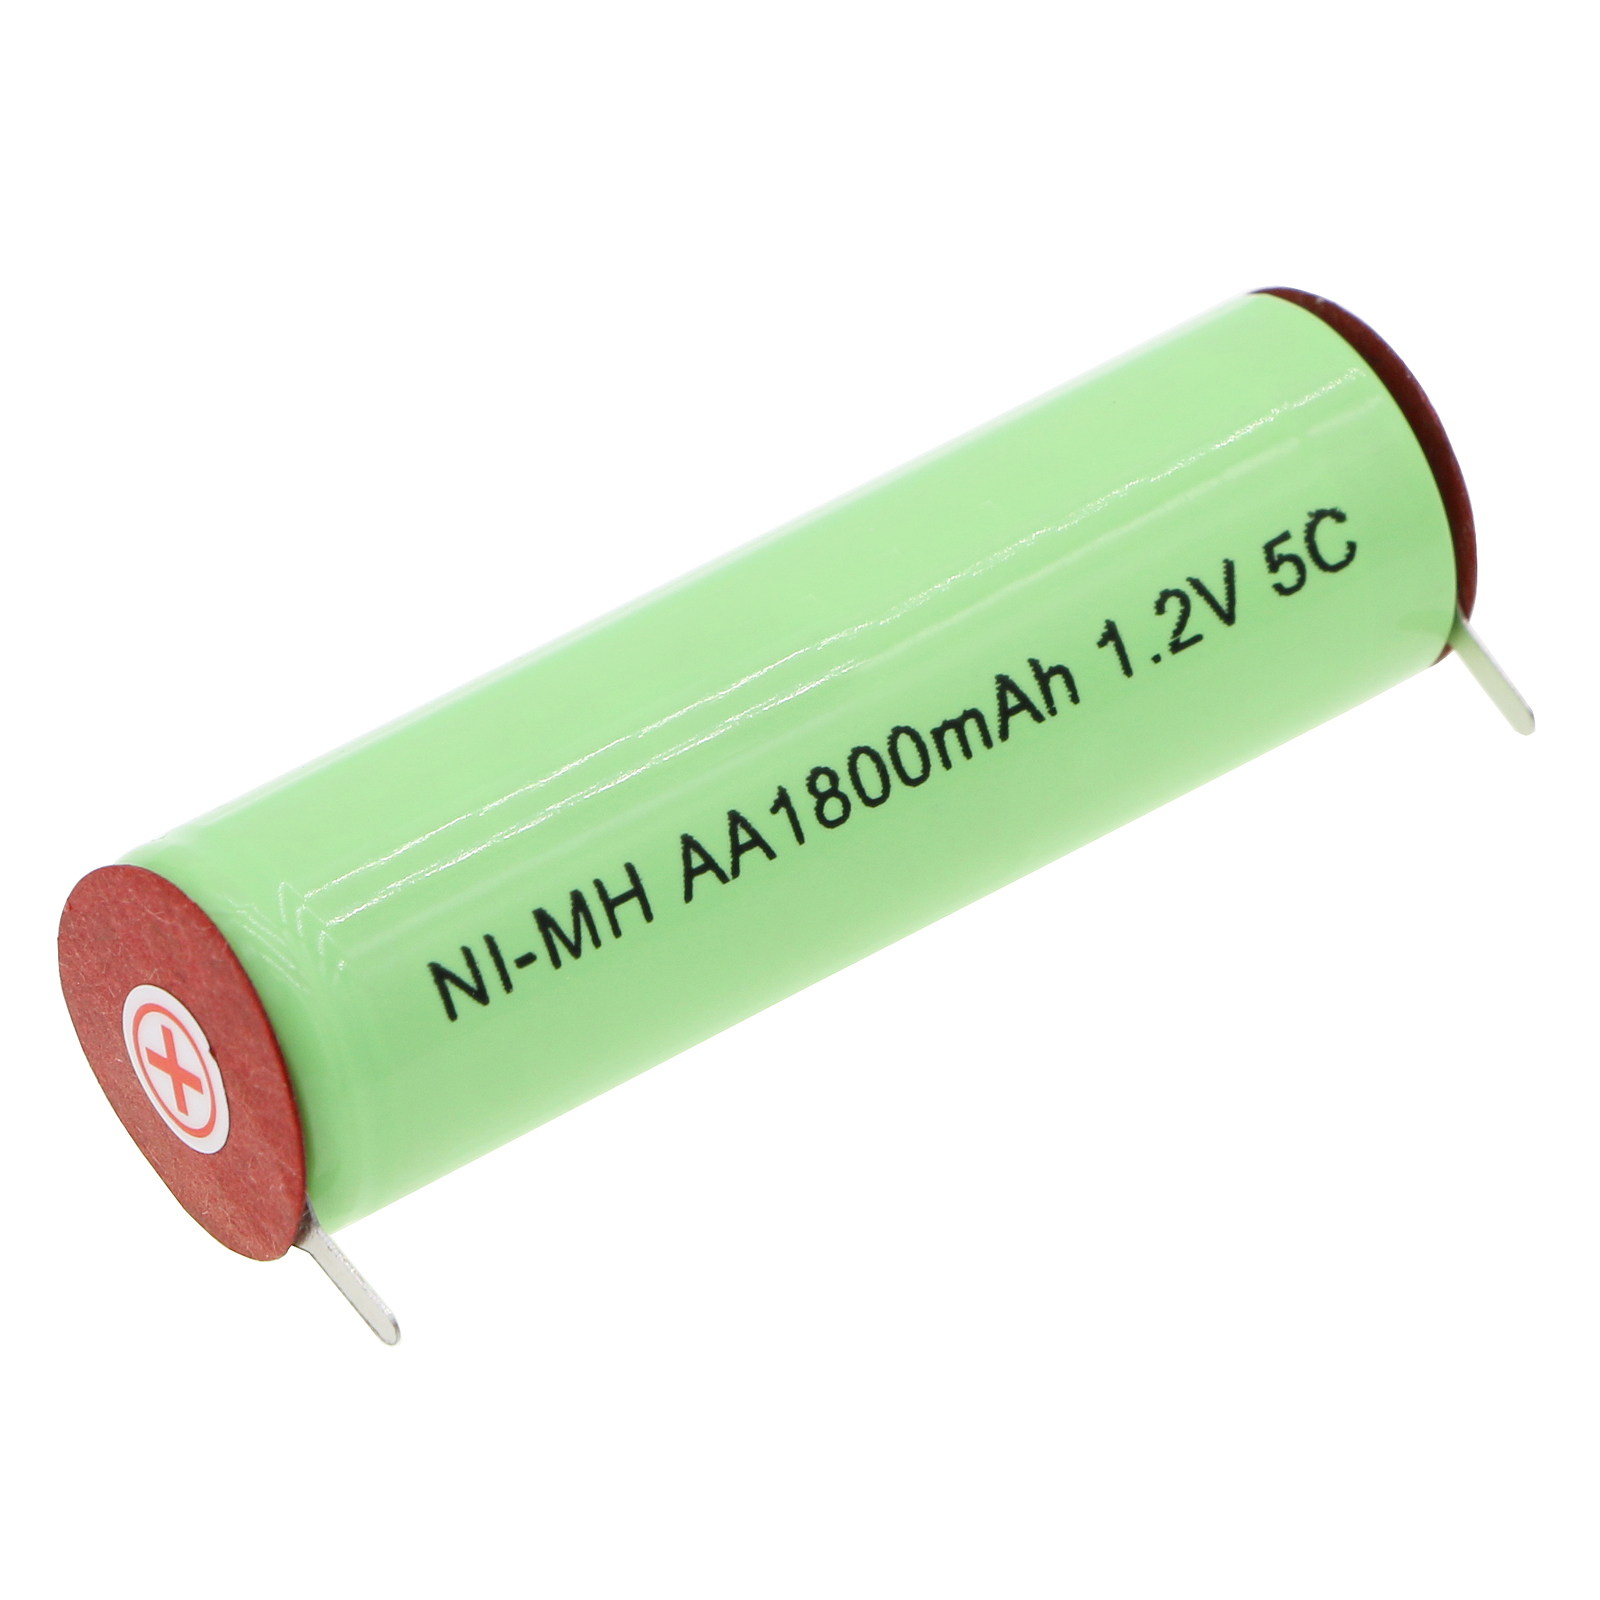 Batteries for CarreraShaver